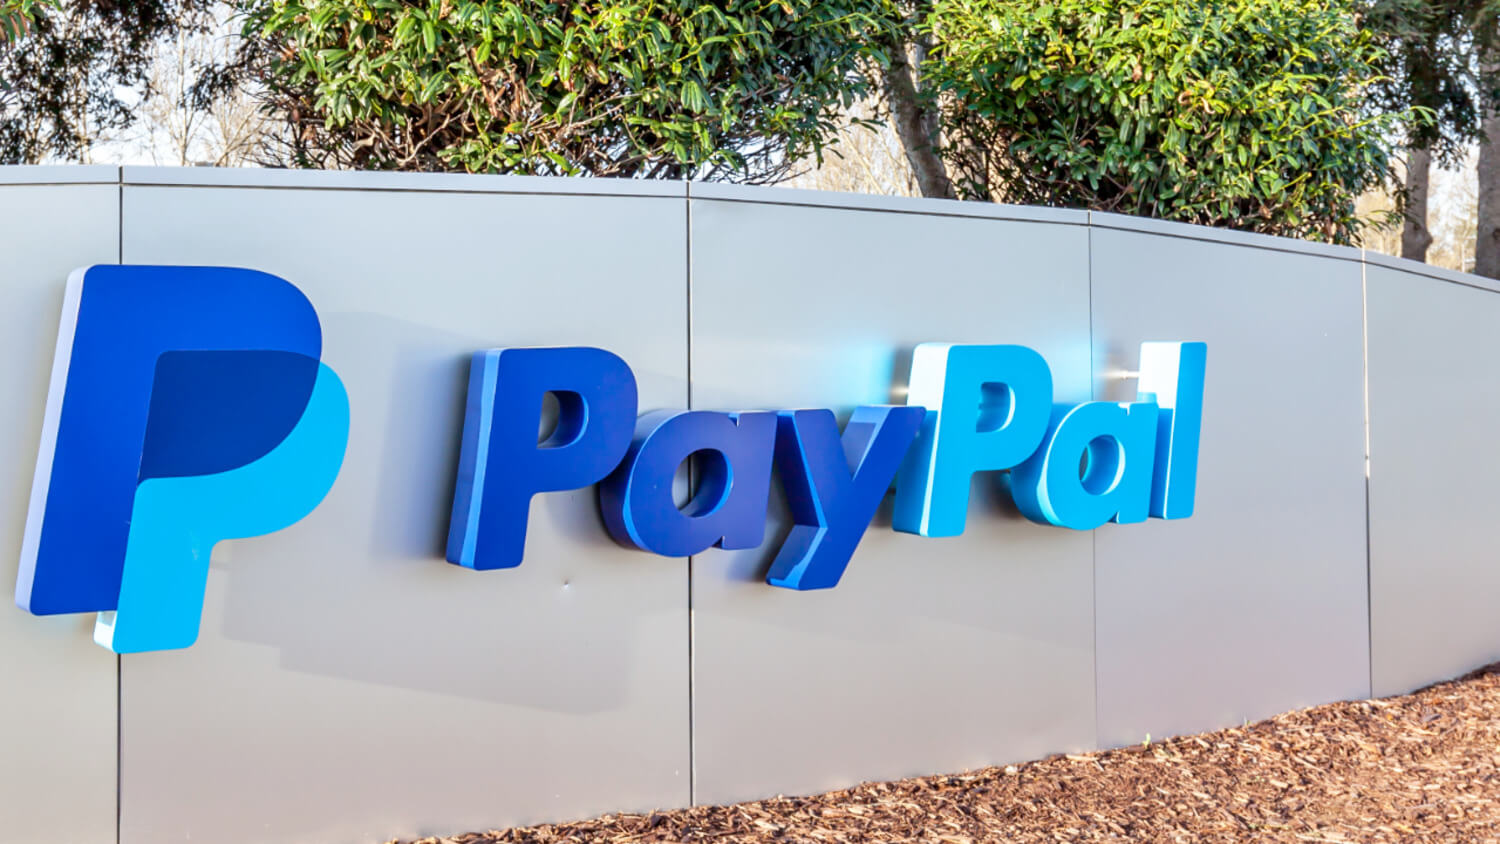 КРИПТОЖМЫХ / Биткоин по 19 тысяч, дефицит криптовалюты на рынке и перспективы Ethereum 2.0. Руководитель PayPal рассказал о больших планах компании относительно Биткоина. Фото.